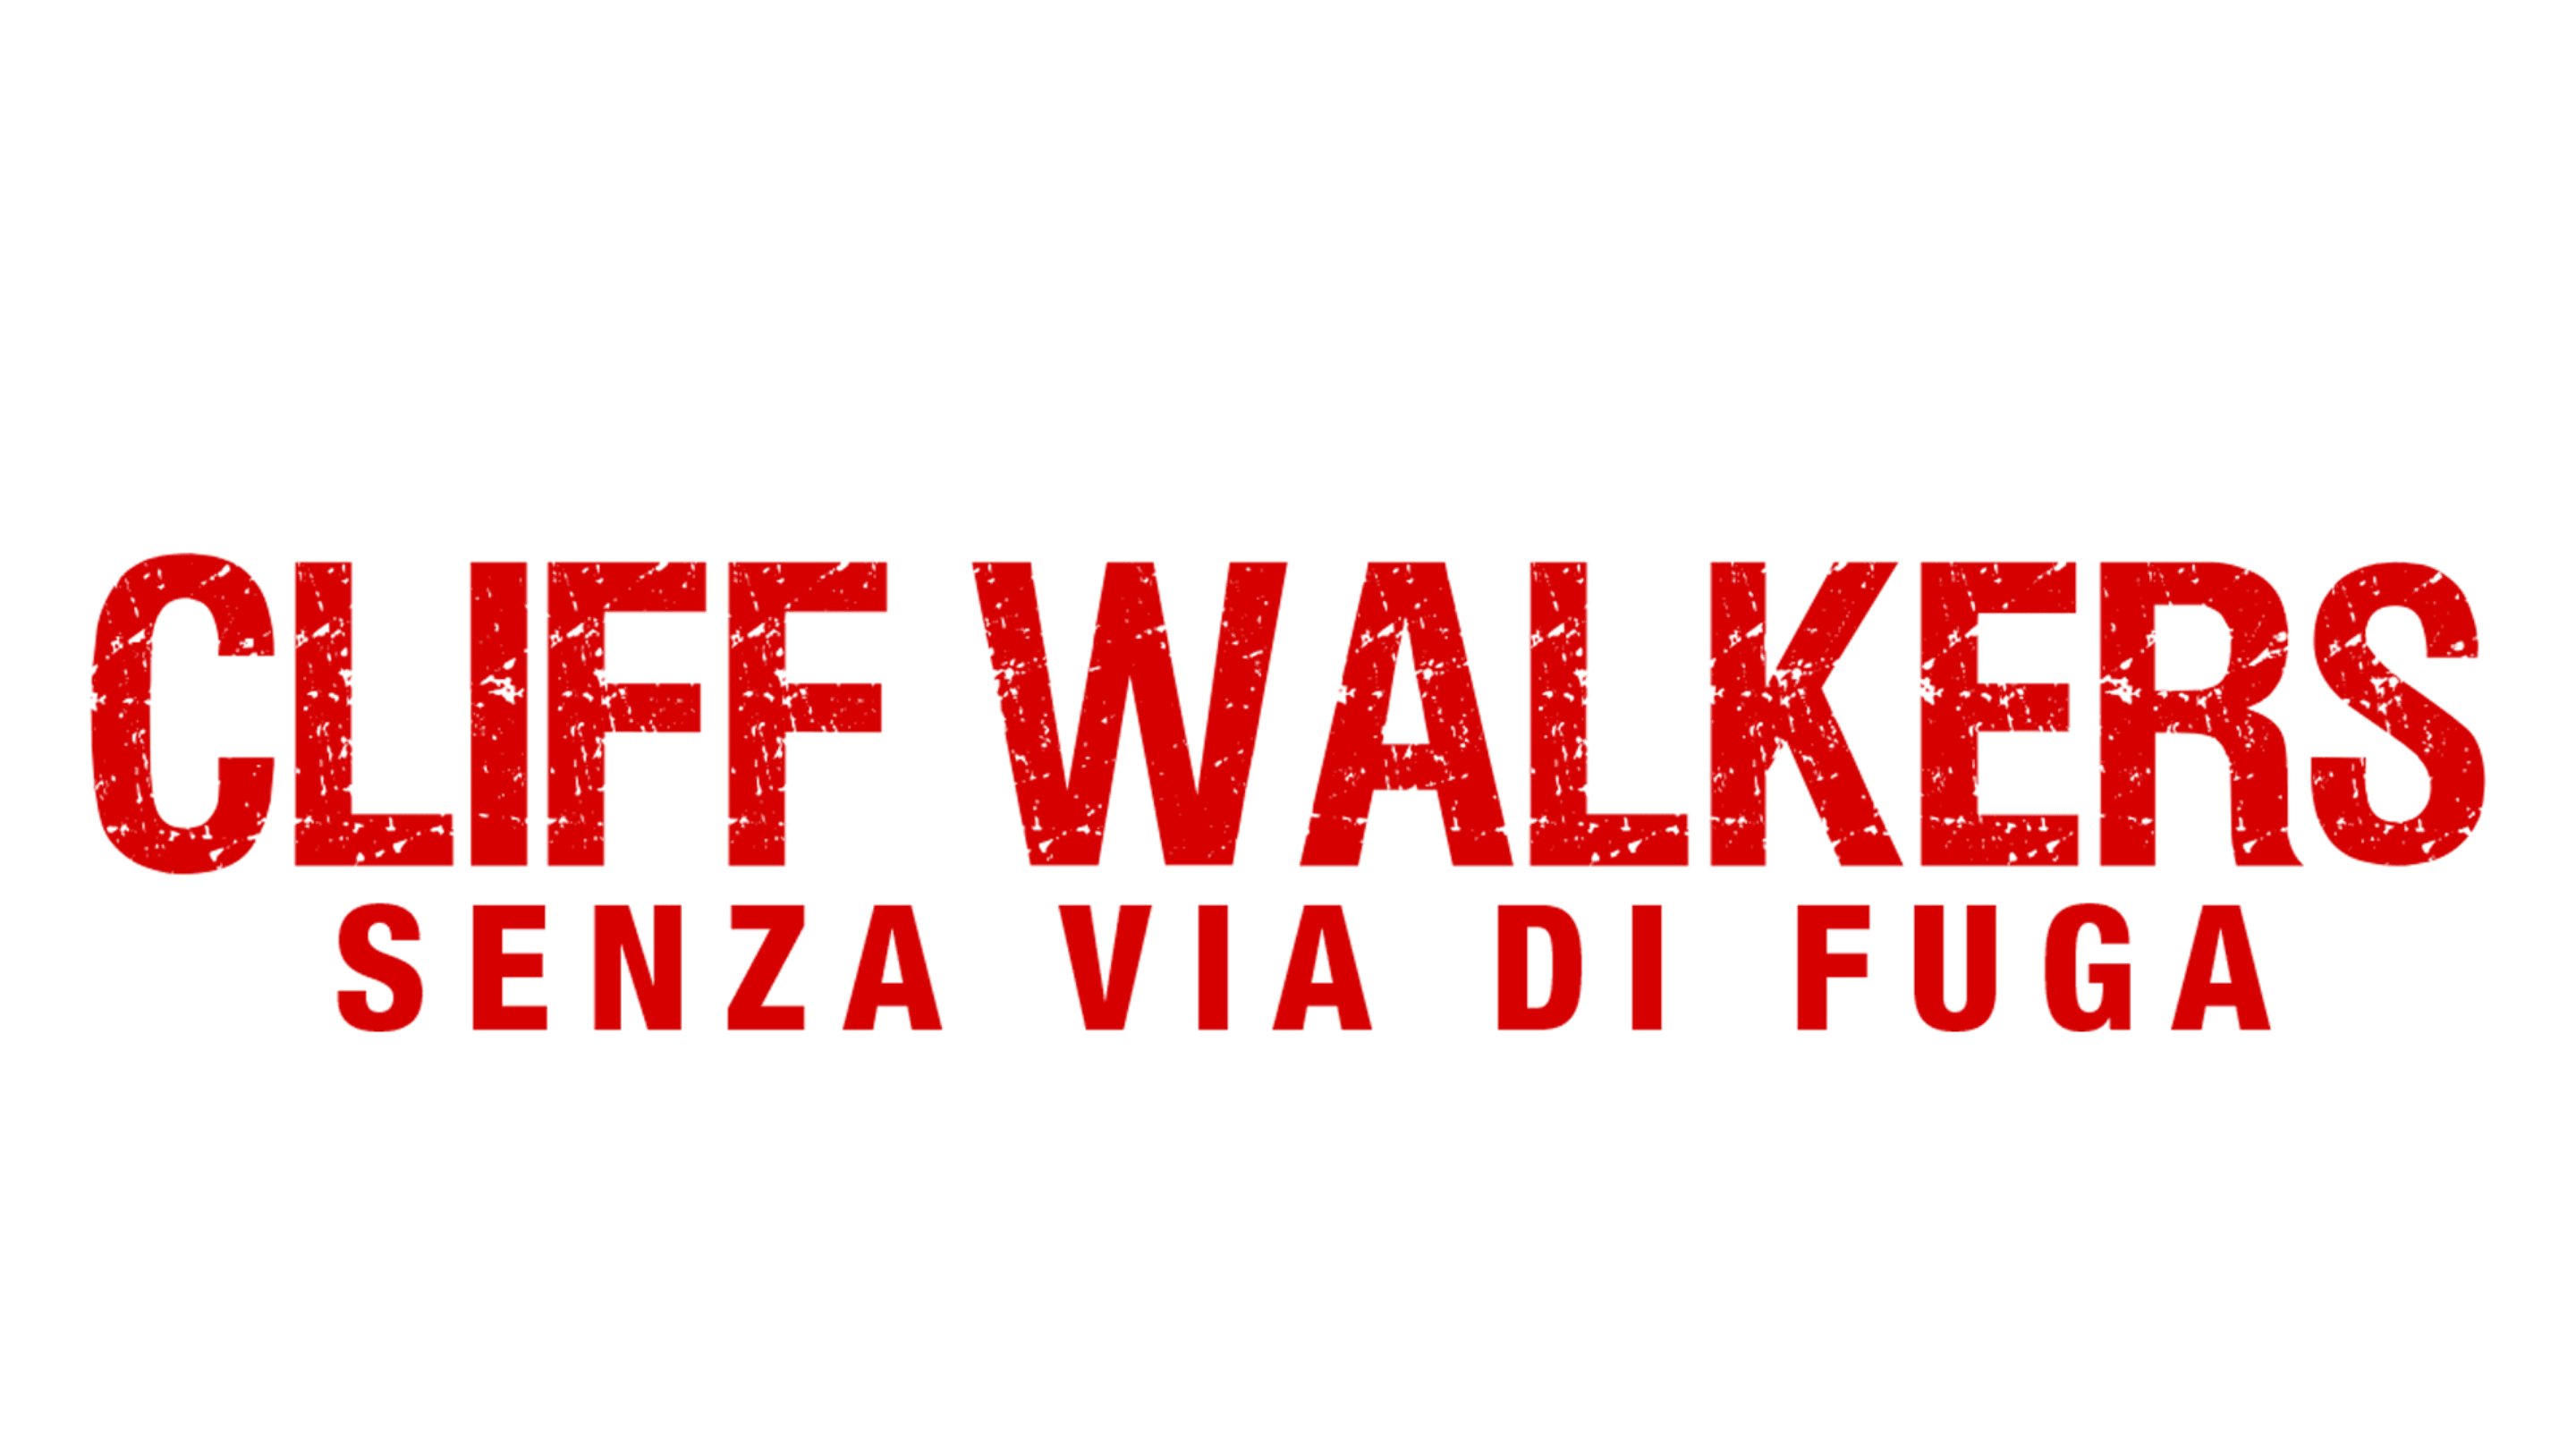 Cliff Walkers - Senza via di fuga